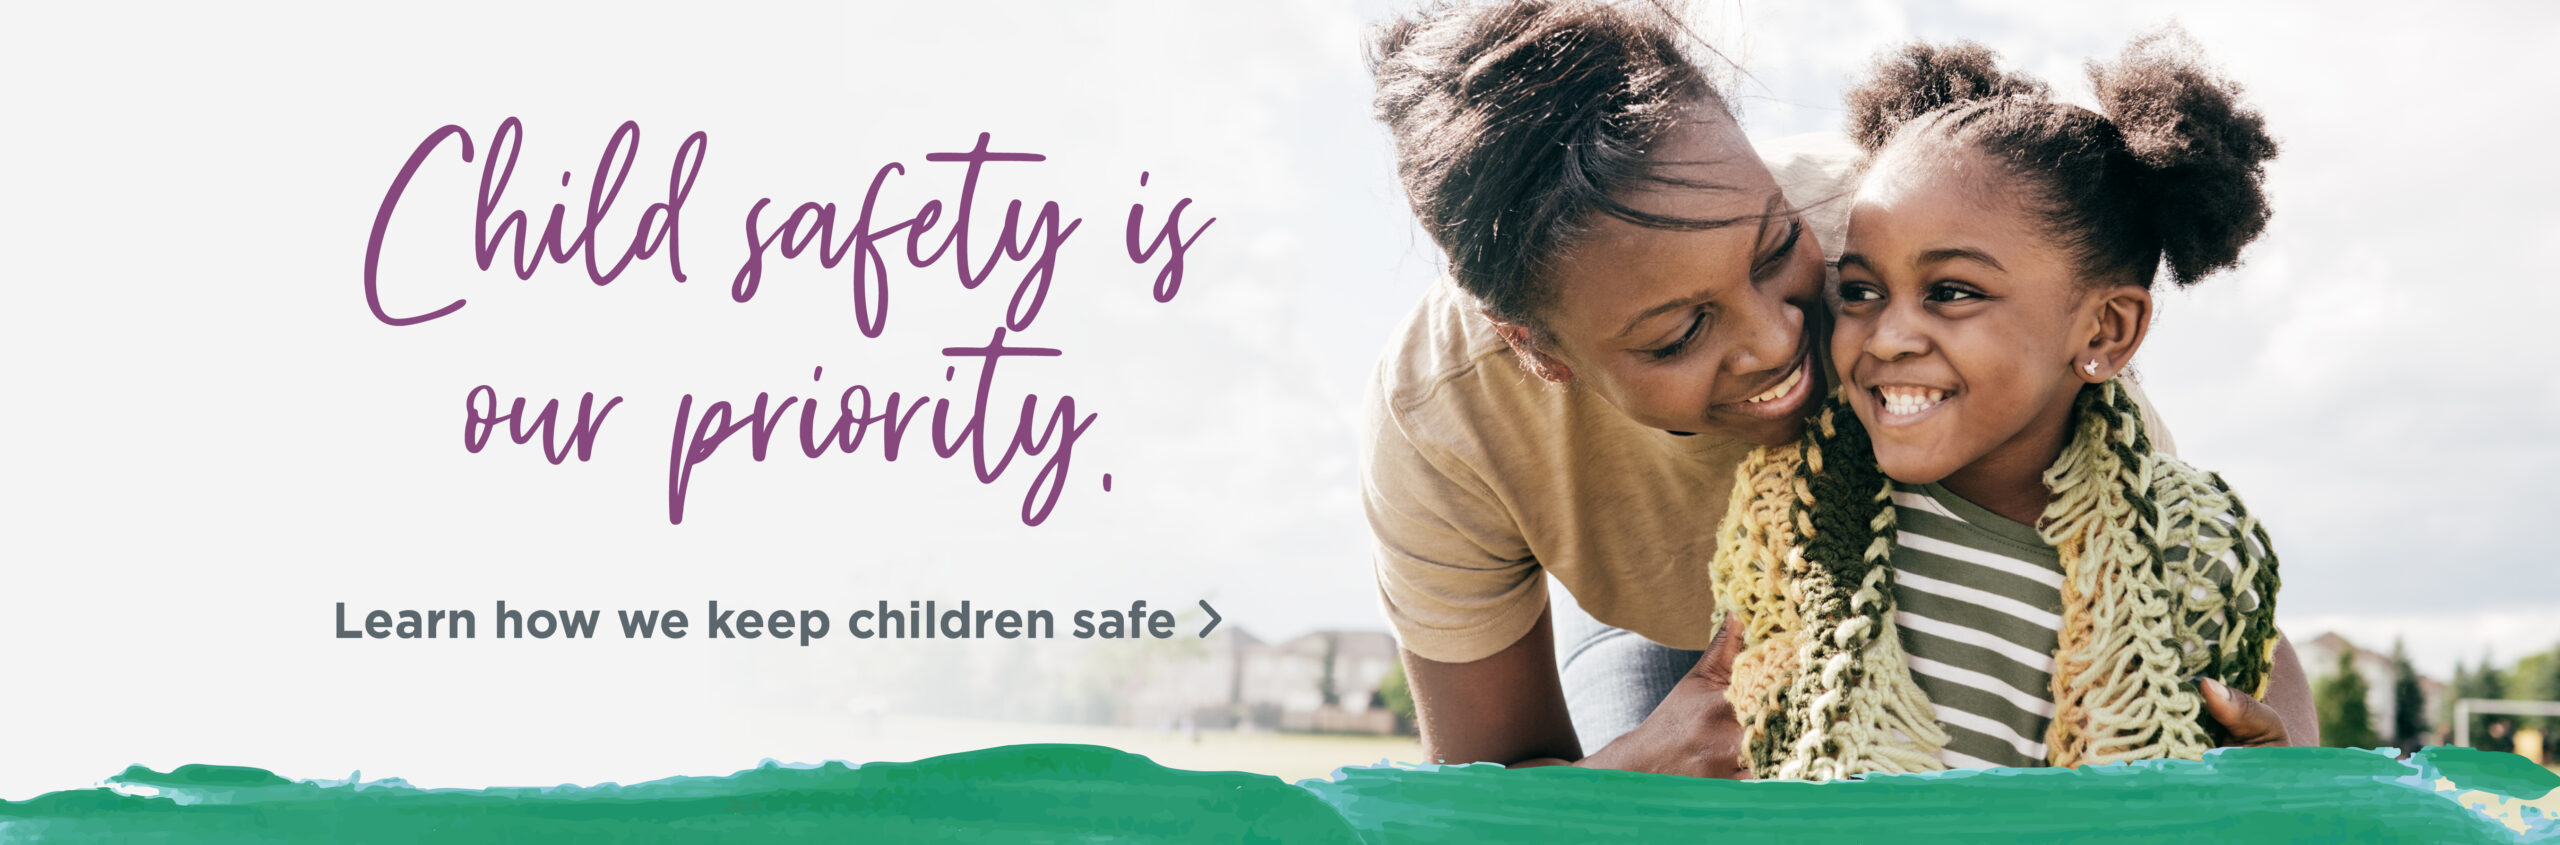 Child Safety Web Banner 1300x429